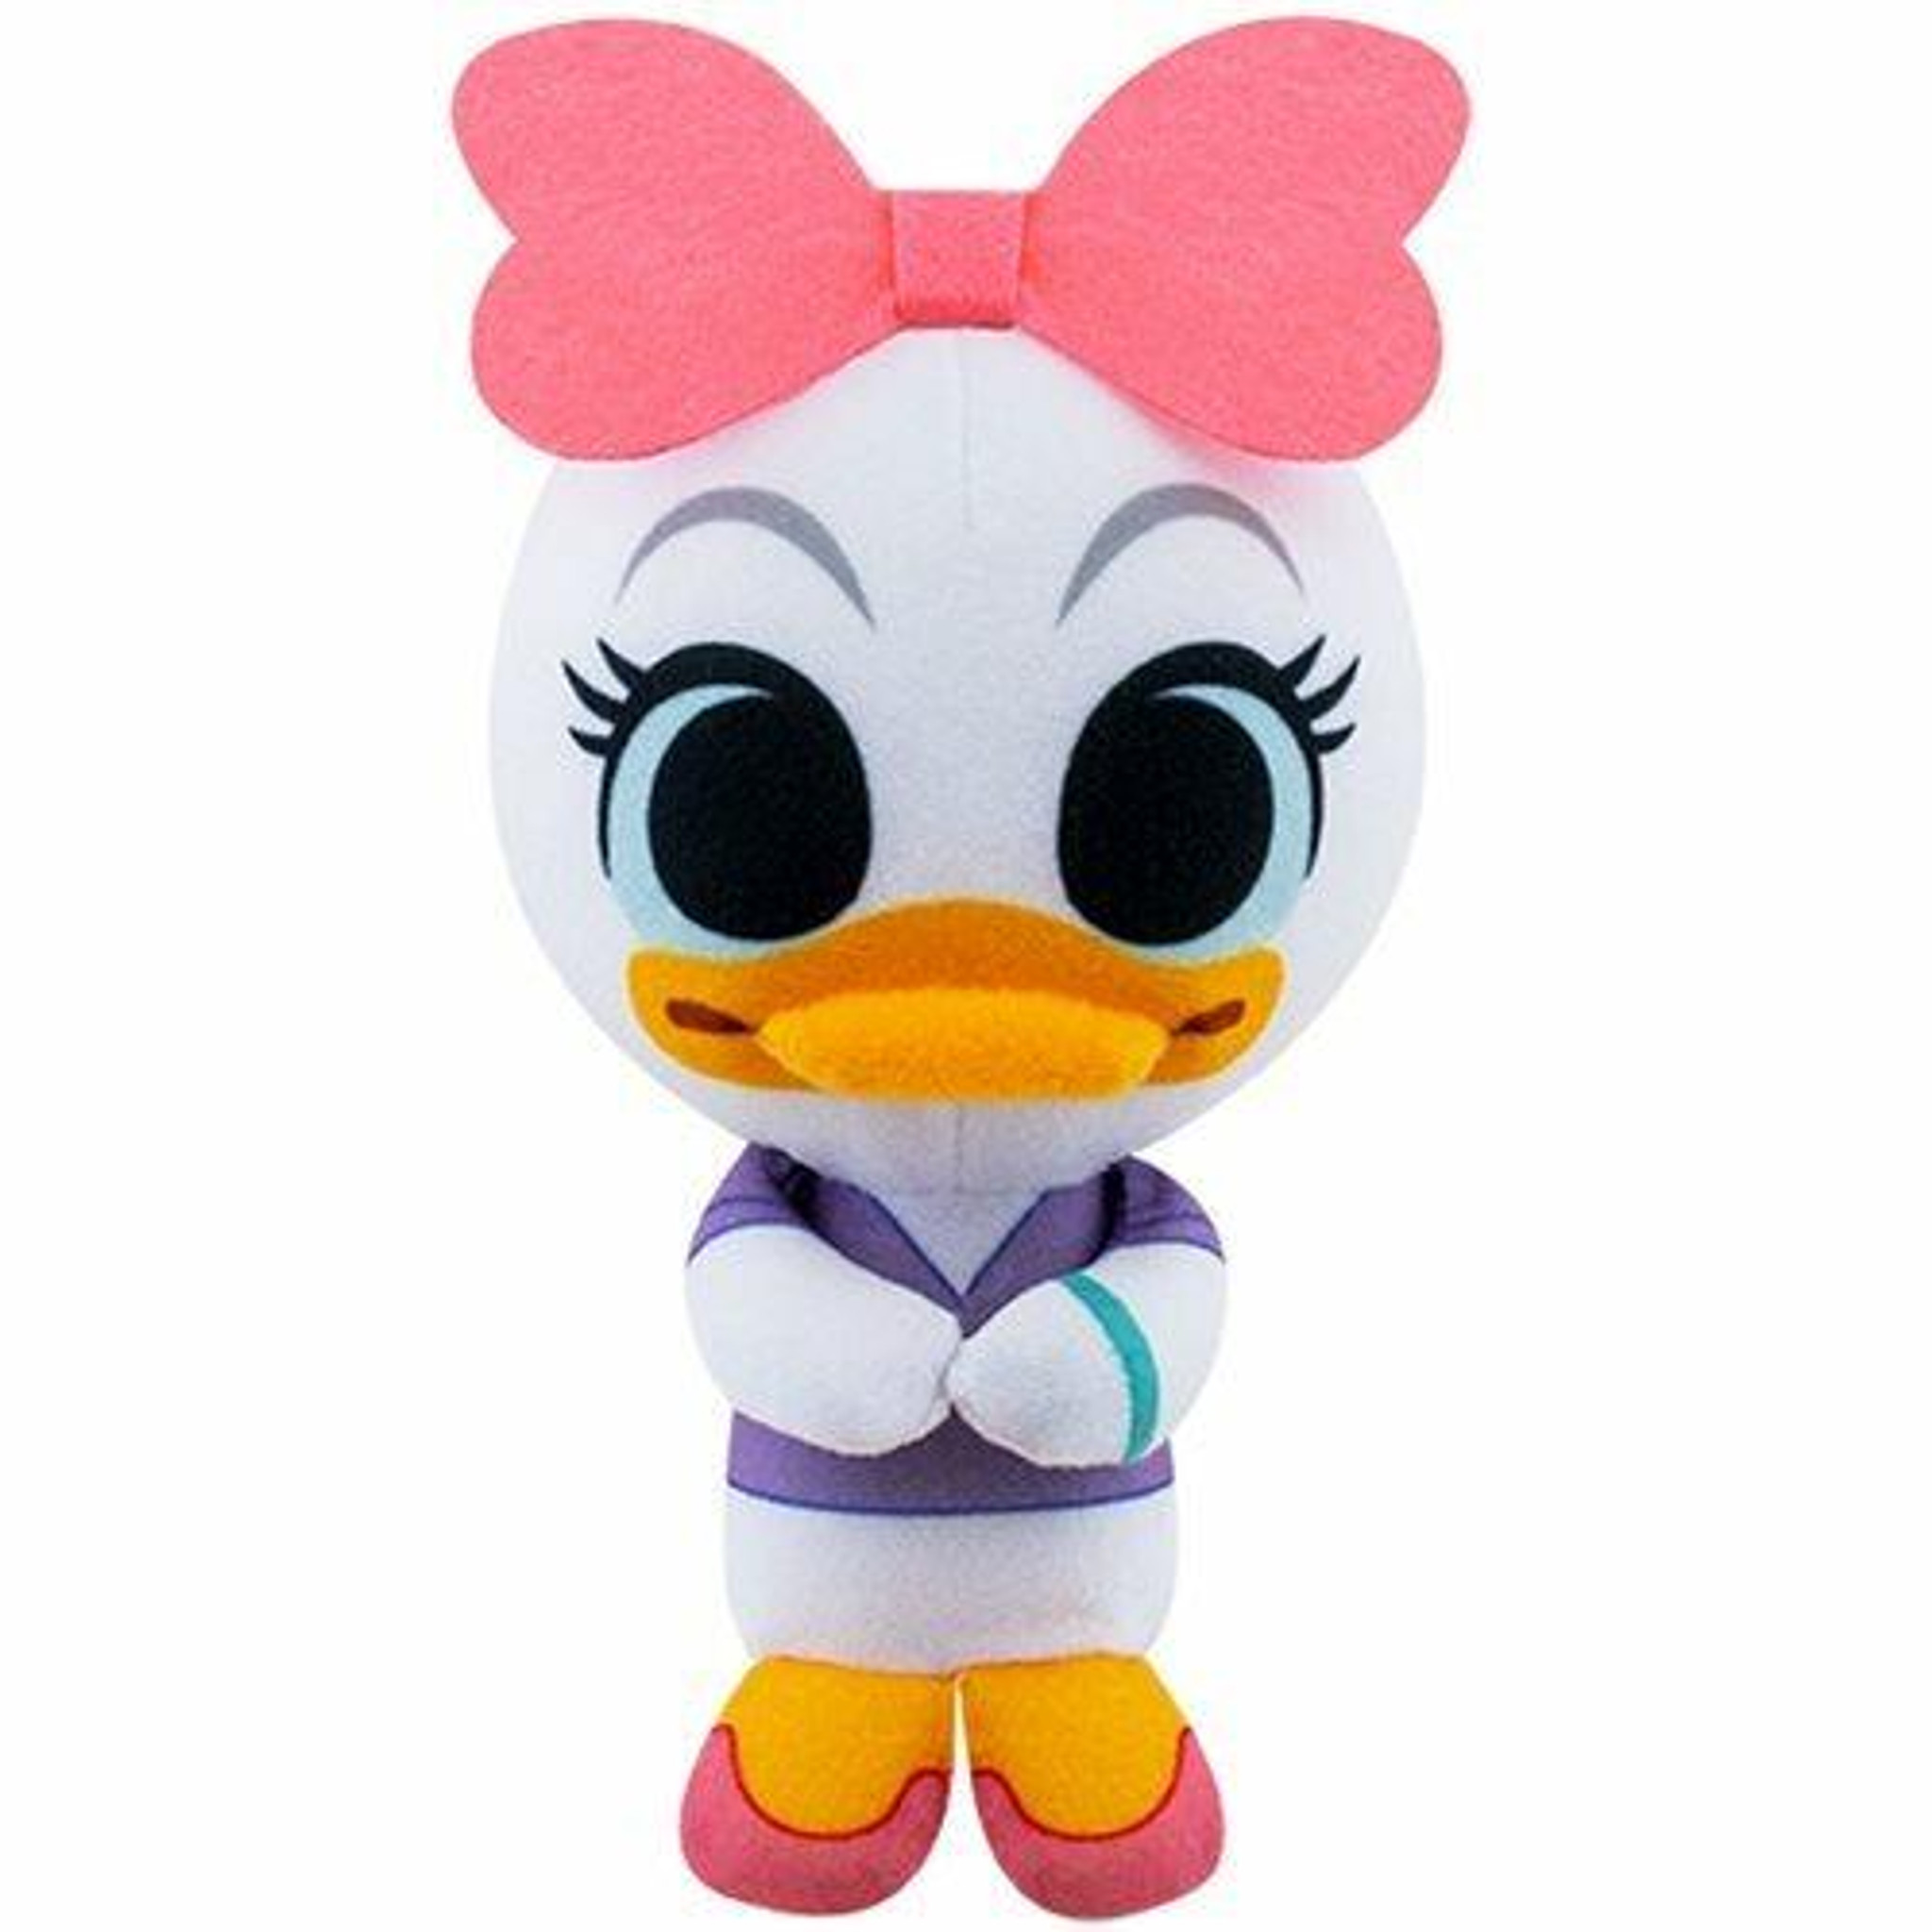 Disney Mini-Plush Donald Duck S1 4 Inch Size by Funko 